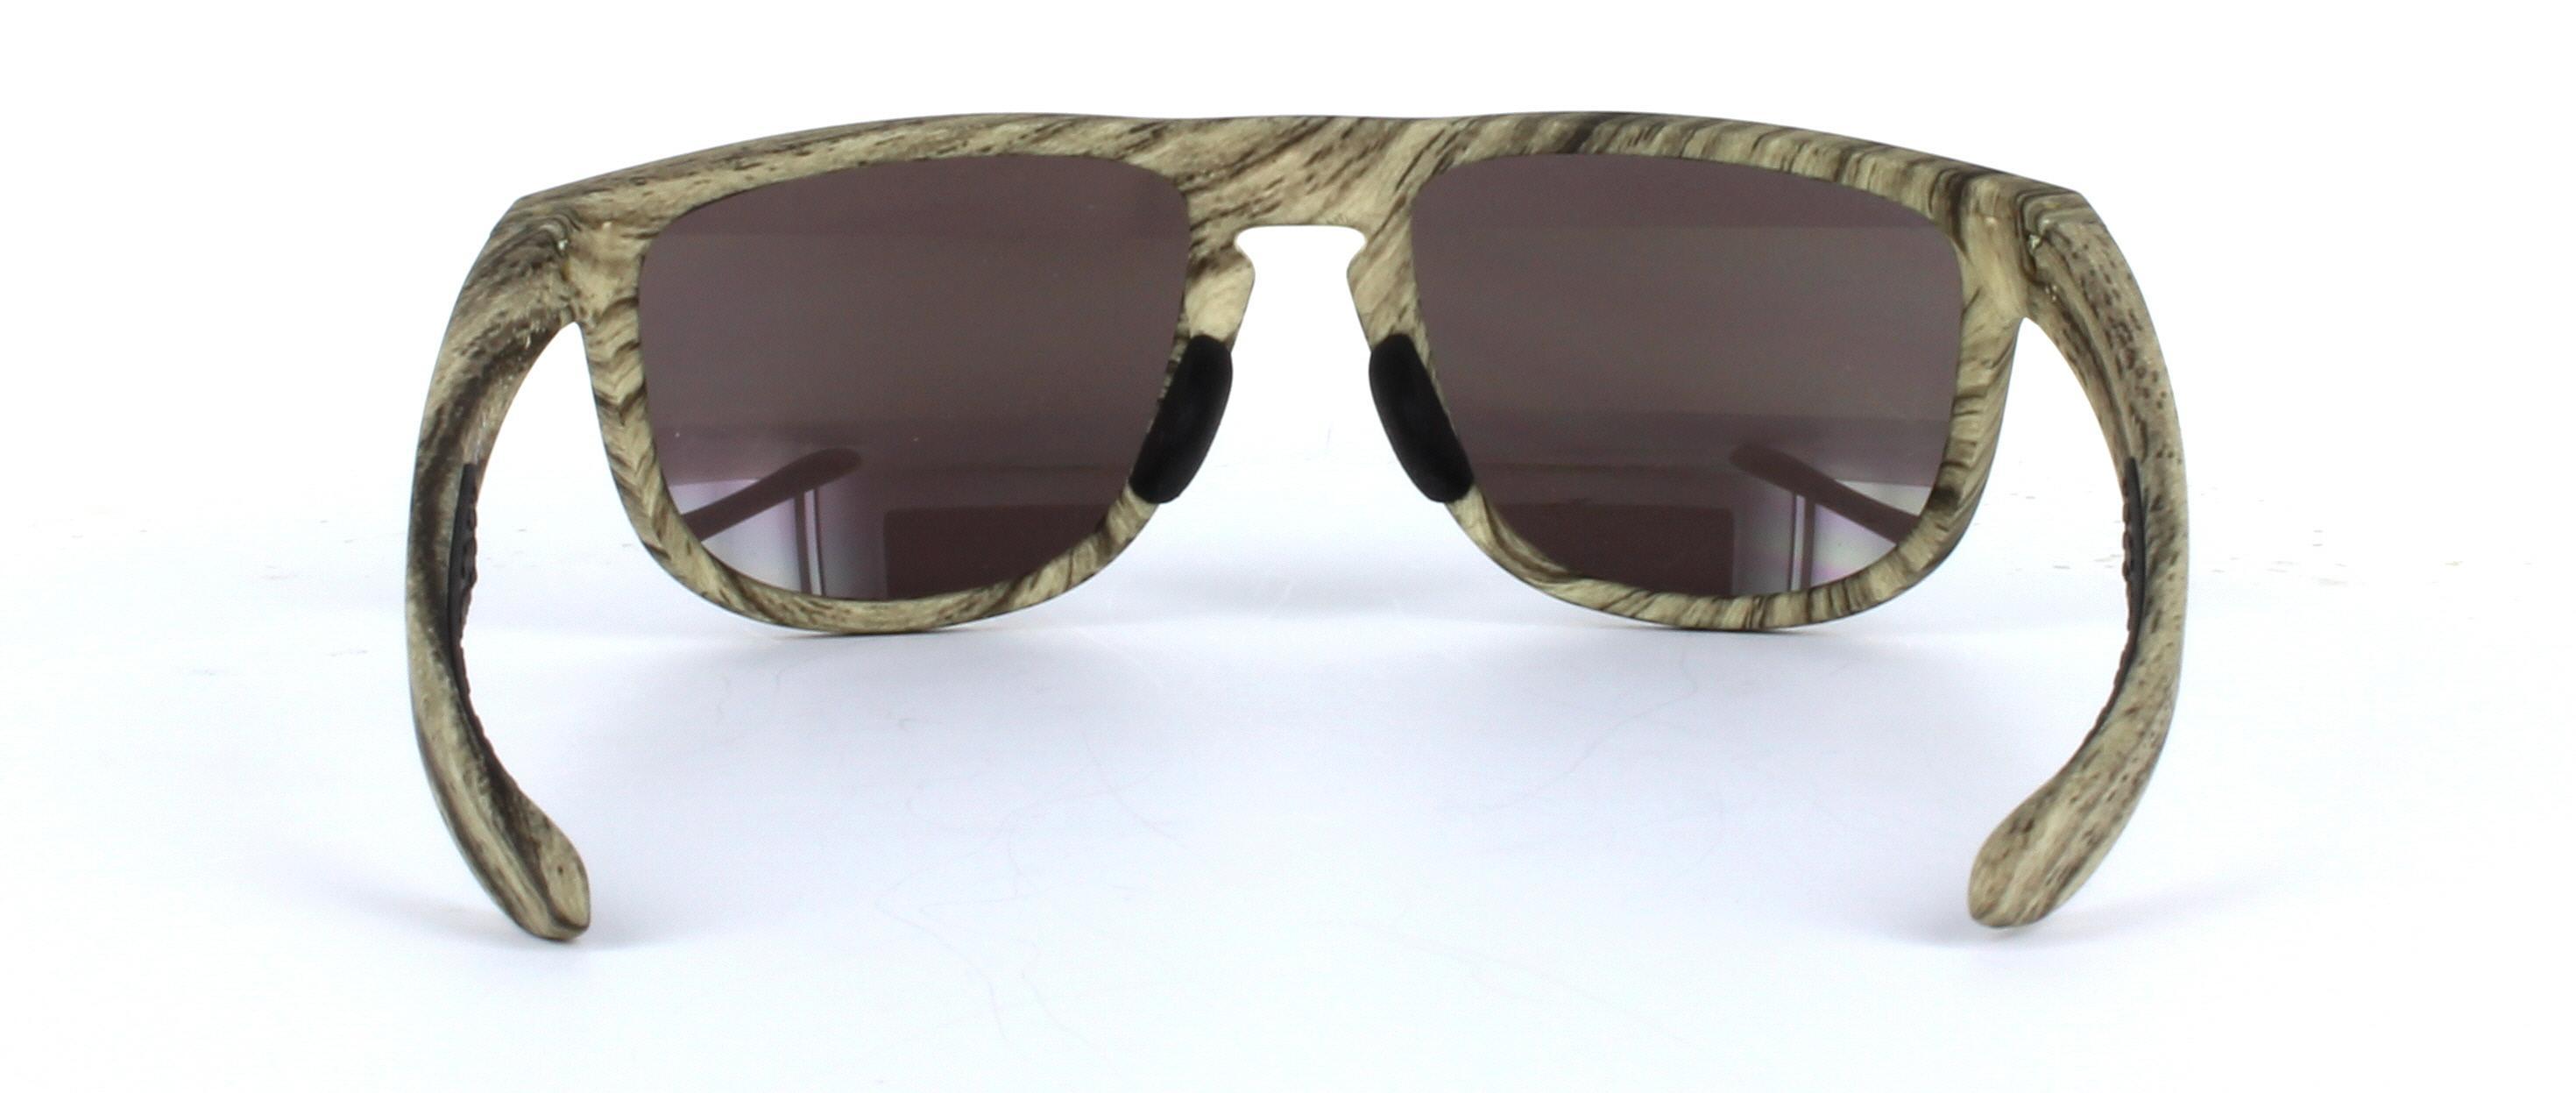 Oakley (O9379) Light Brown Full Rim Plastic Prescription Sunglasses - Image View 3